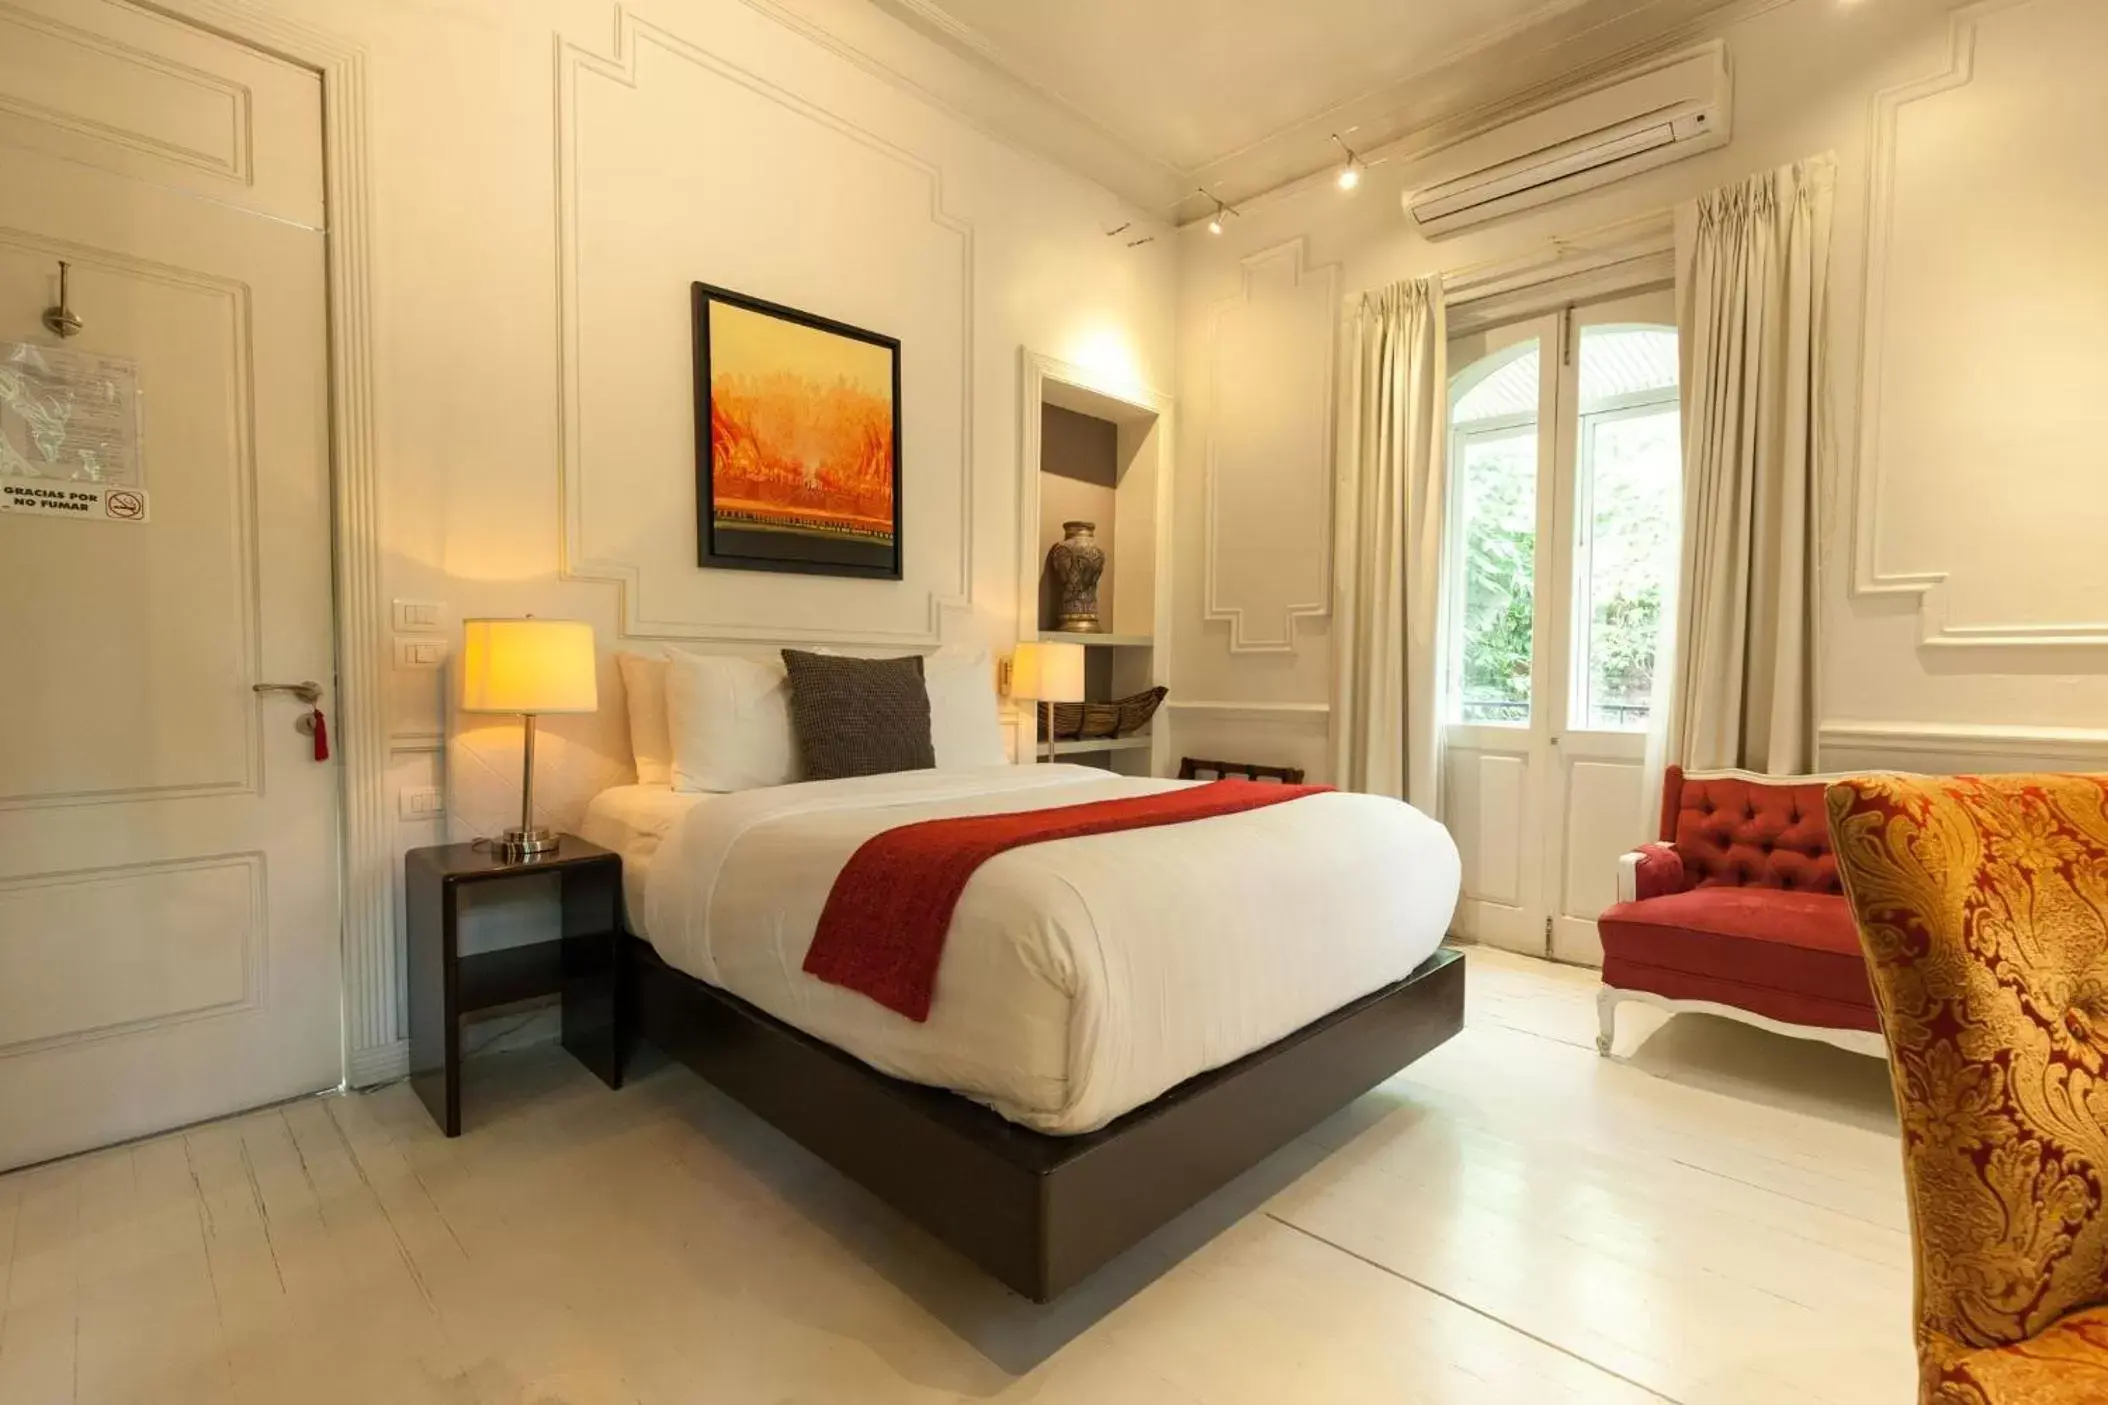 Bed, Room Photo in Hotel Villa Condesa